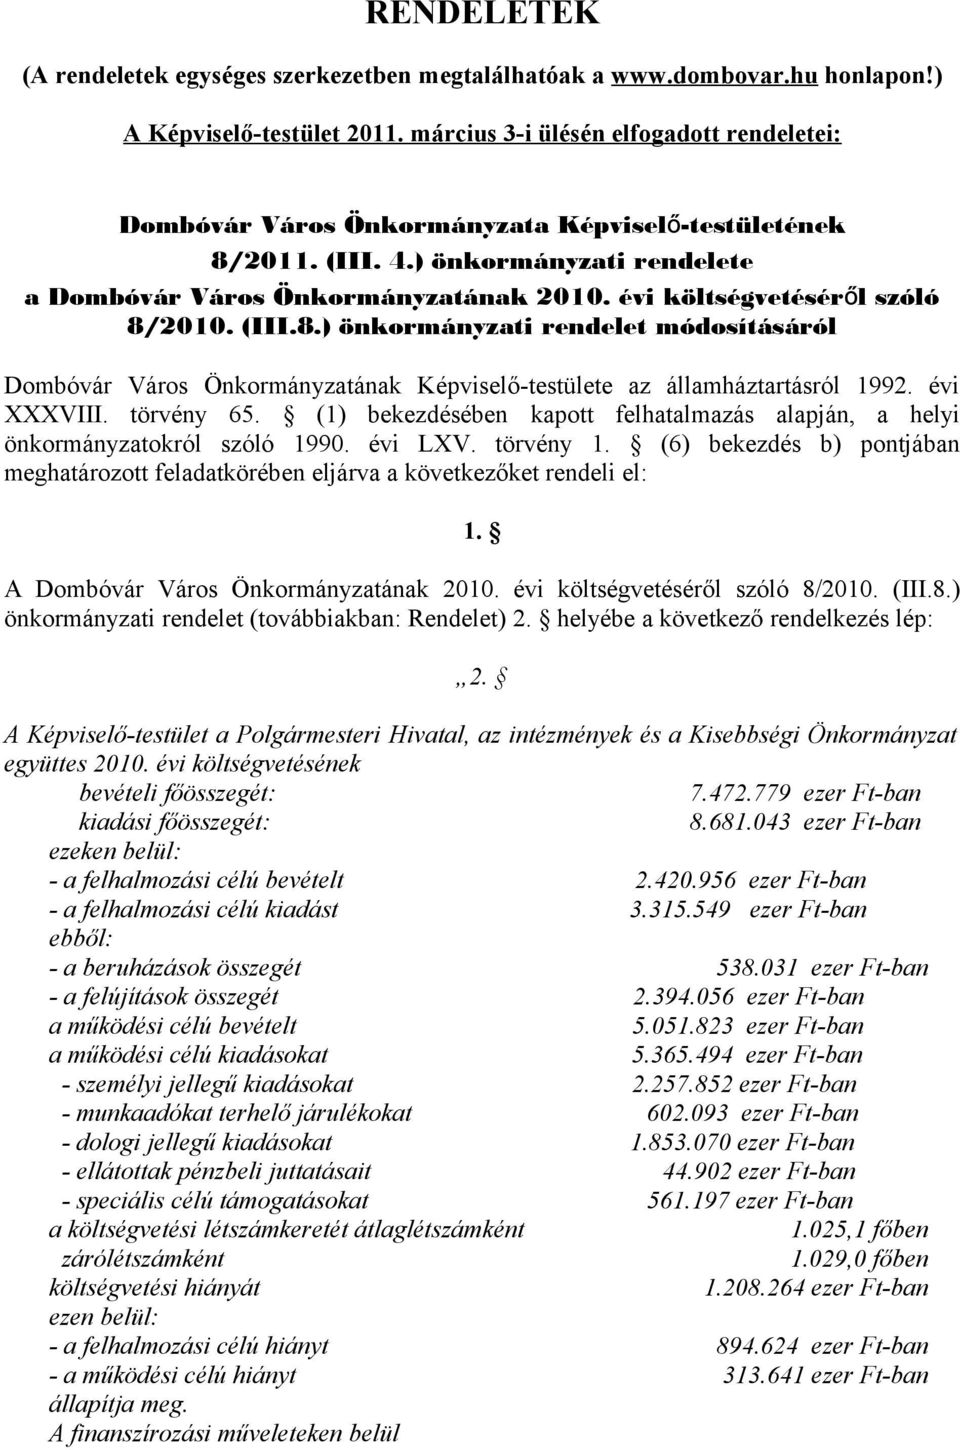 évi költségvetésérő l szóló 8/2010. (III.8.) önkormányzati rendelet módosításáról Dombóvár Város Önkormányzatának Képviselő-testülete az államháztartásról 1992. évi XXXVIII. törvény 65.